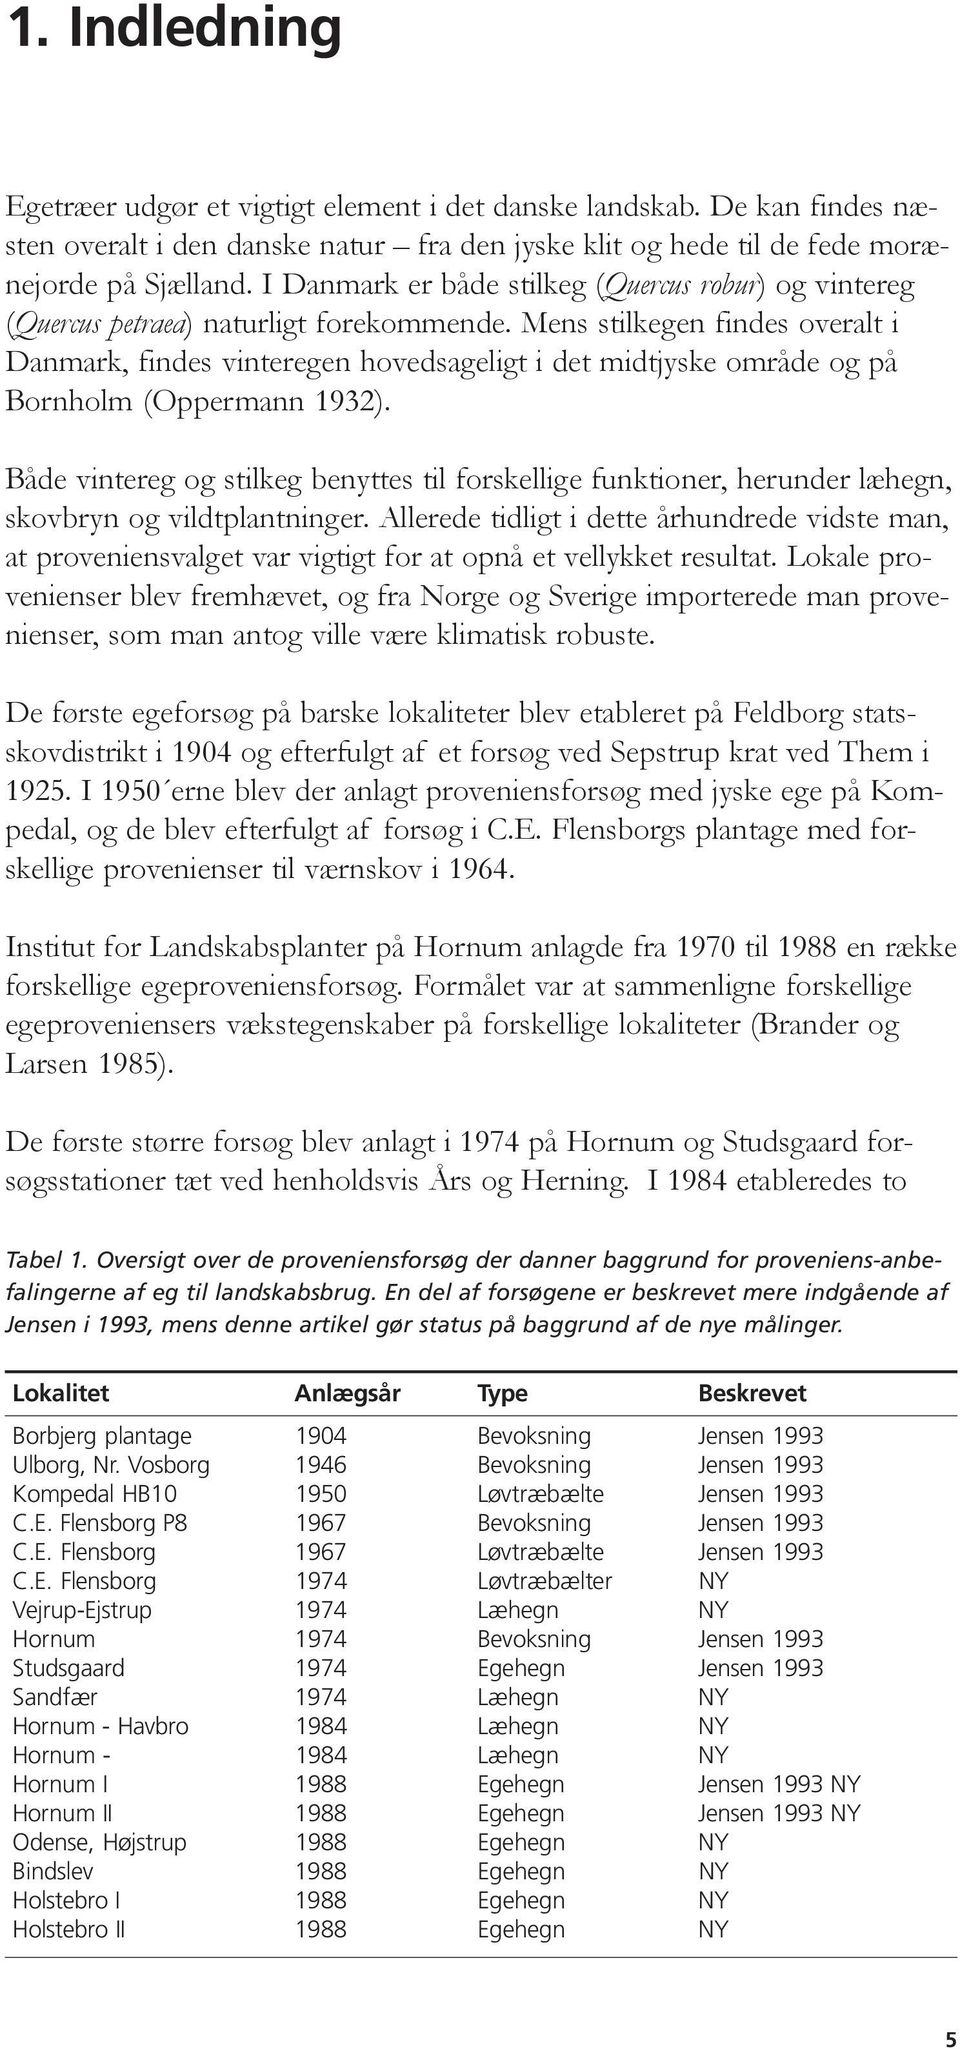 Mens stilkegen findes overalt i Danmark, findes vinteregen hovedsageligt i det midtjyske område og på Bornholm (Oppermann 1932).